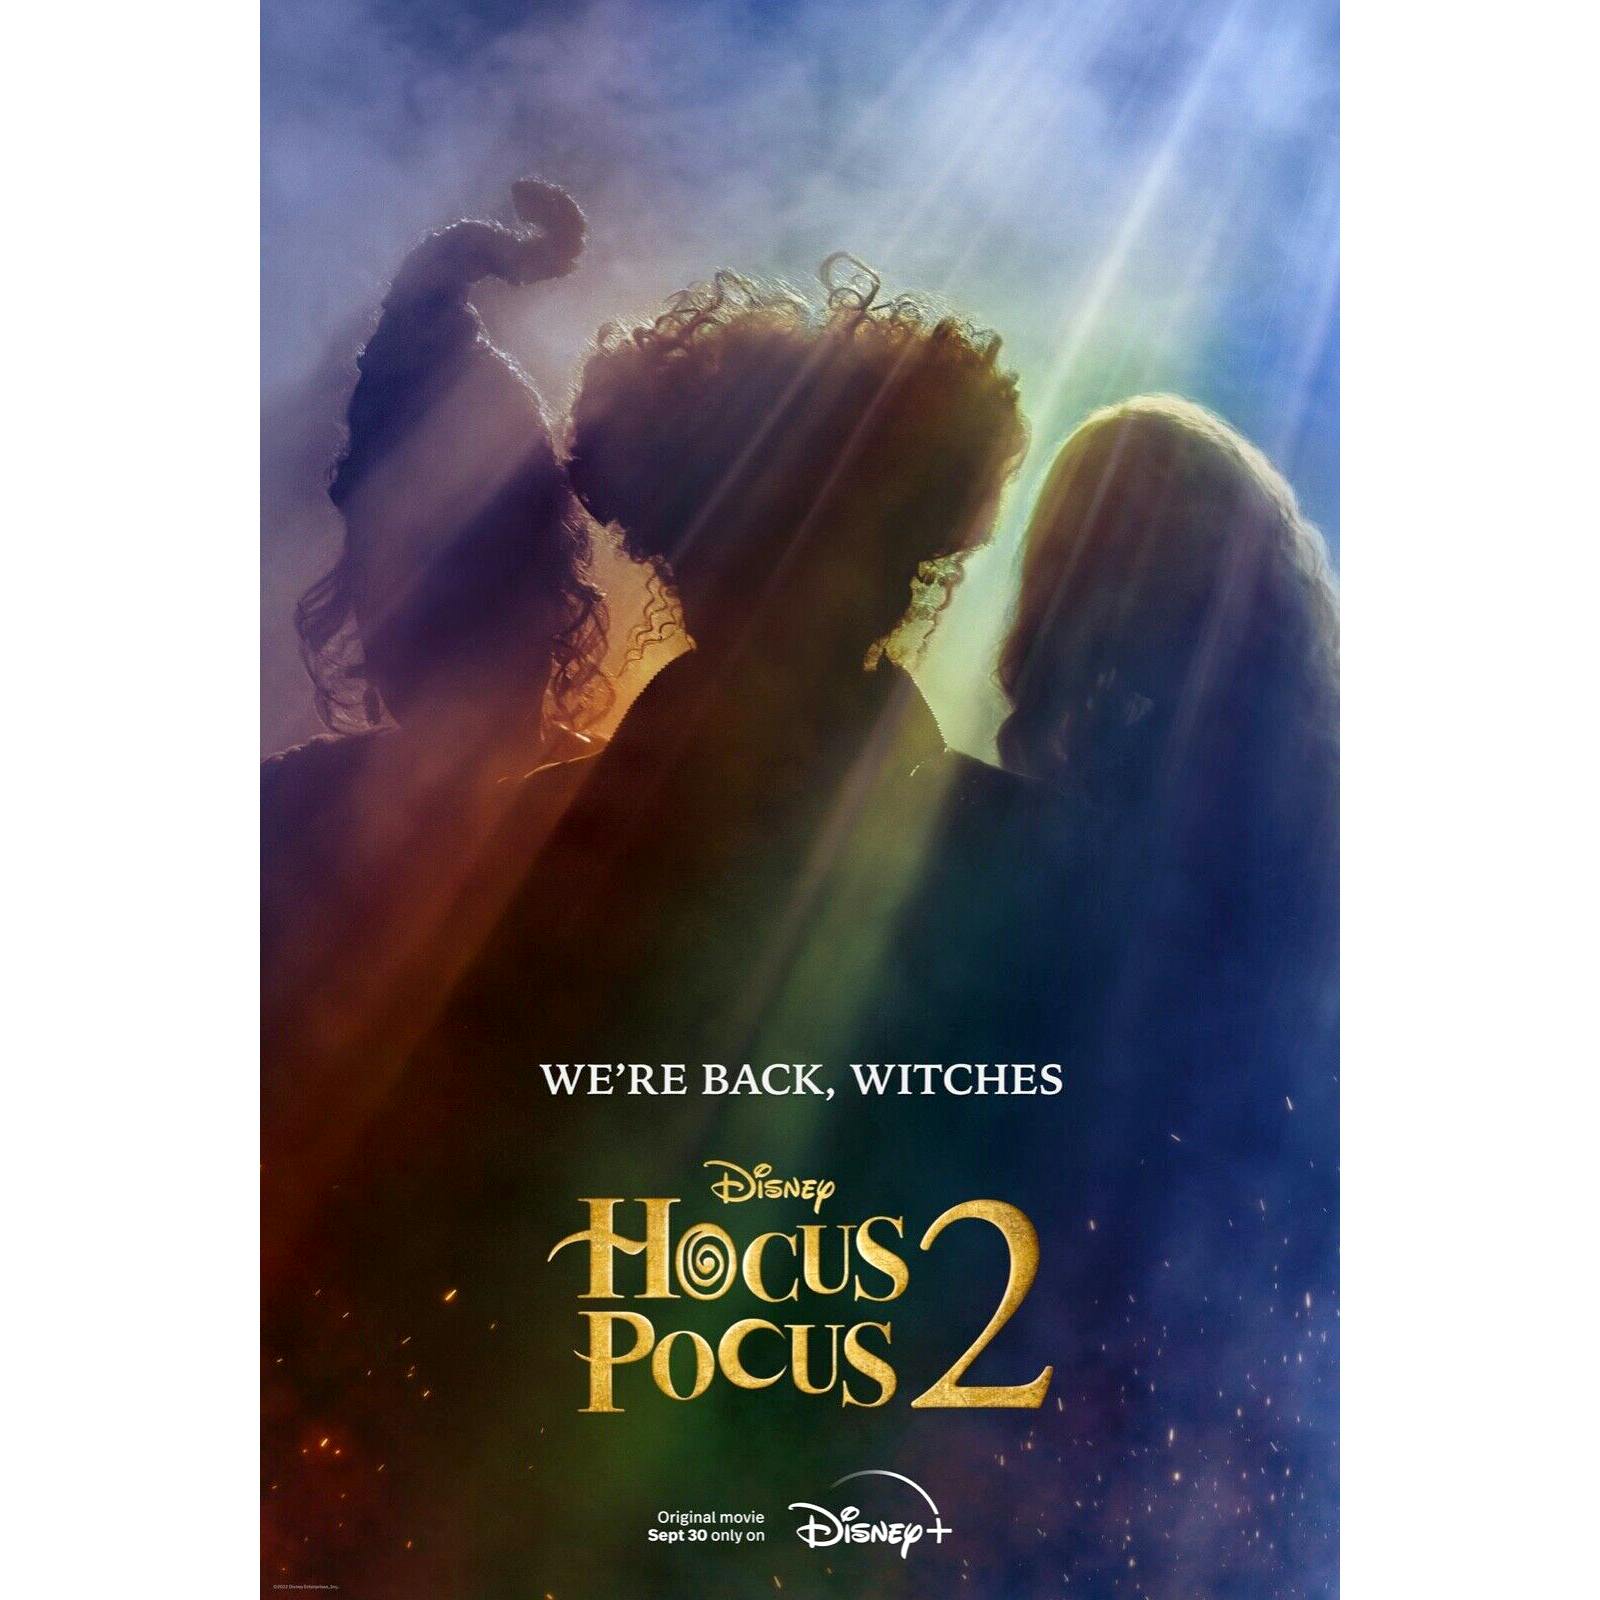 Disney Original Movie Hocus Pocus 2